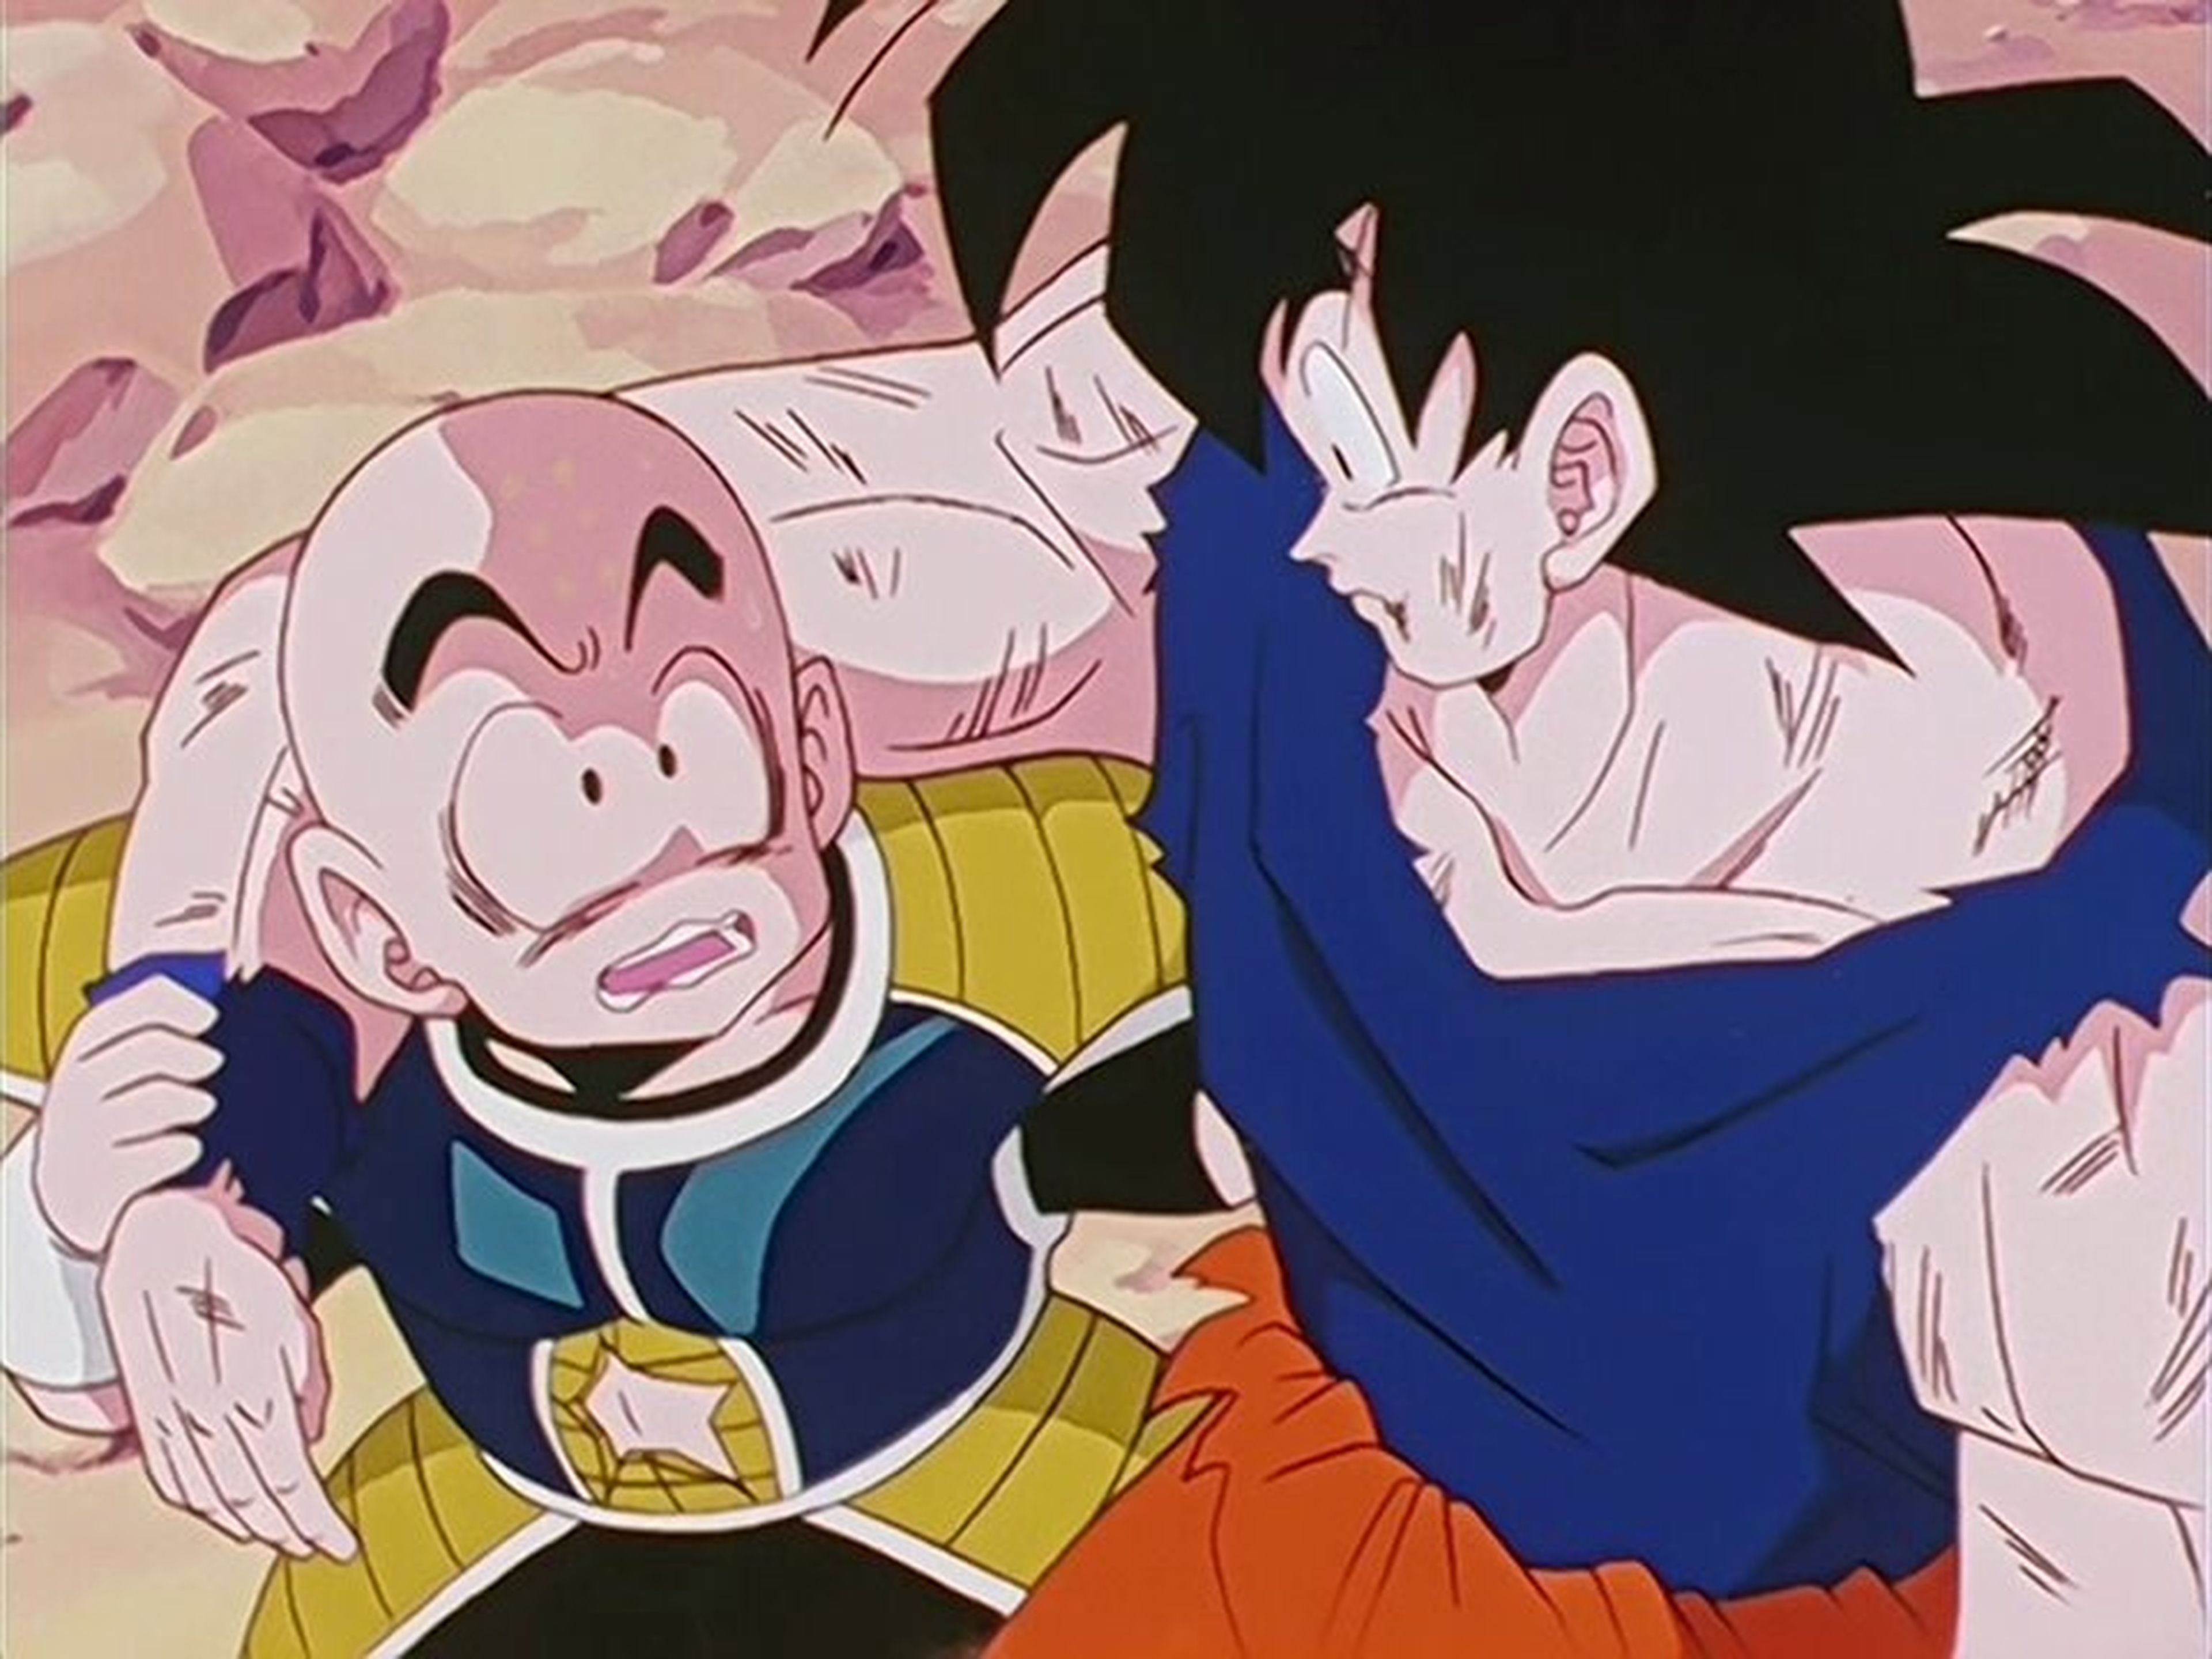 Dragon Ball Z capítulo 95 - Análisis y curiosidades con la transformación de Goku en Super Saiyan